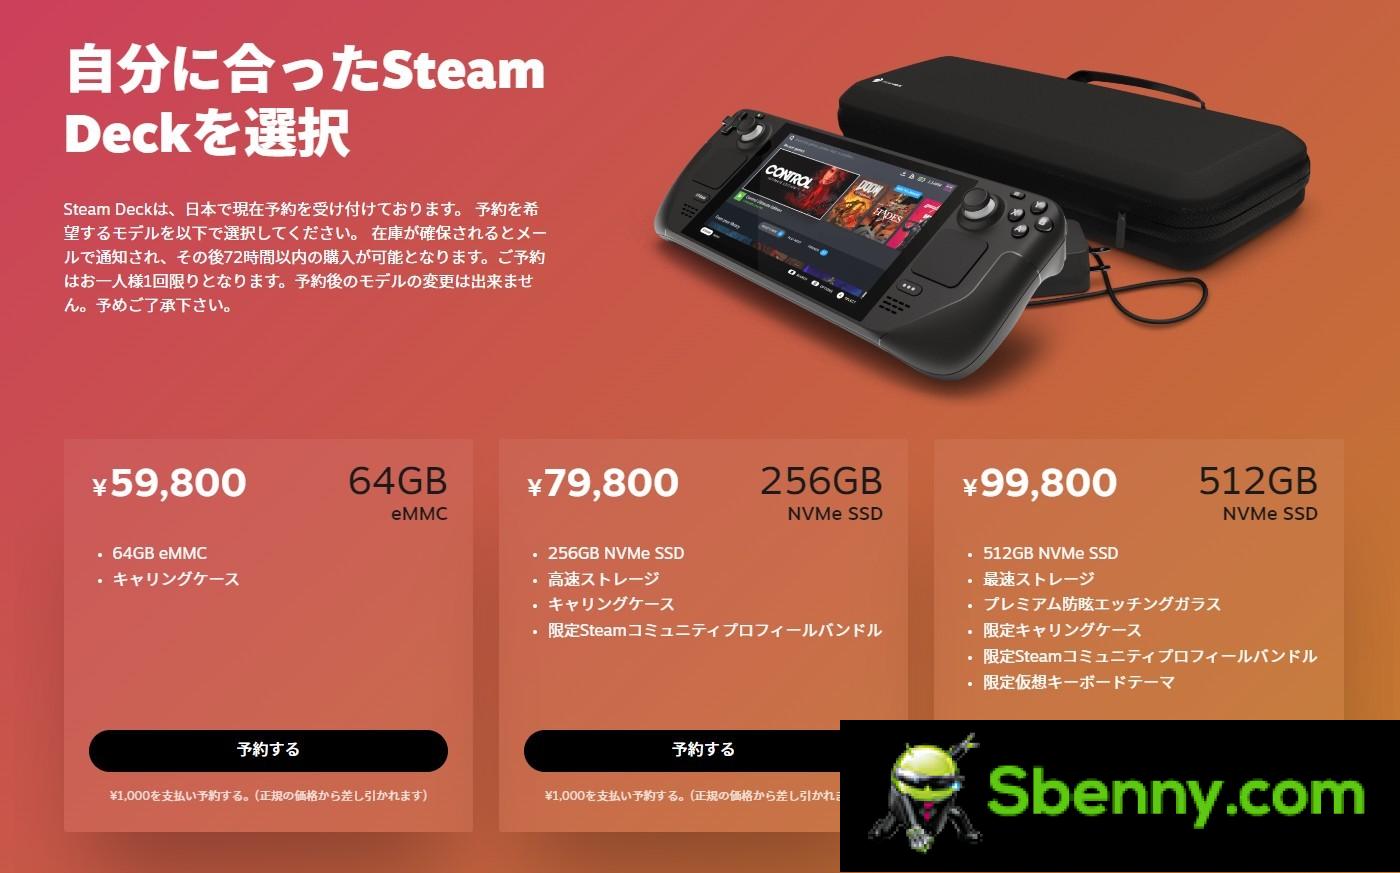 أطلقت Valve منصة Steam Deck في اليابان وكوريا الجنوبية وتايوان وهونغ كونغ